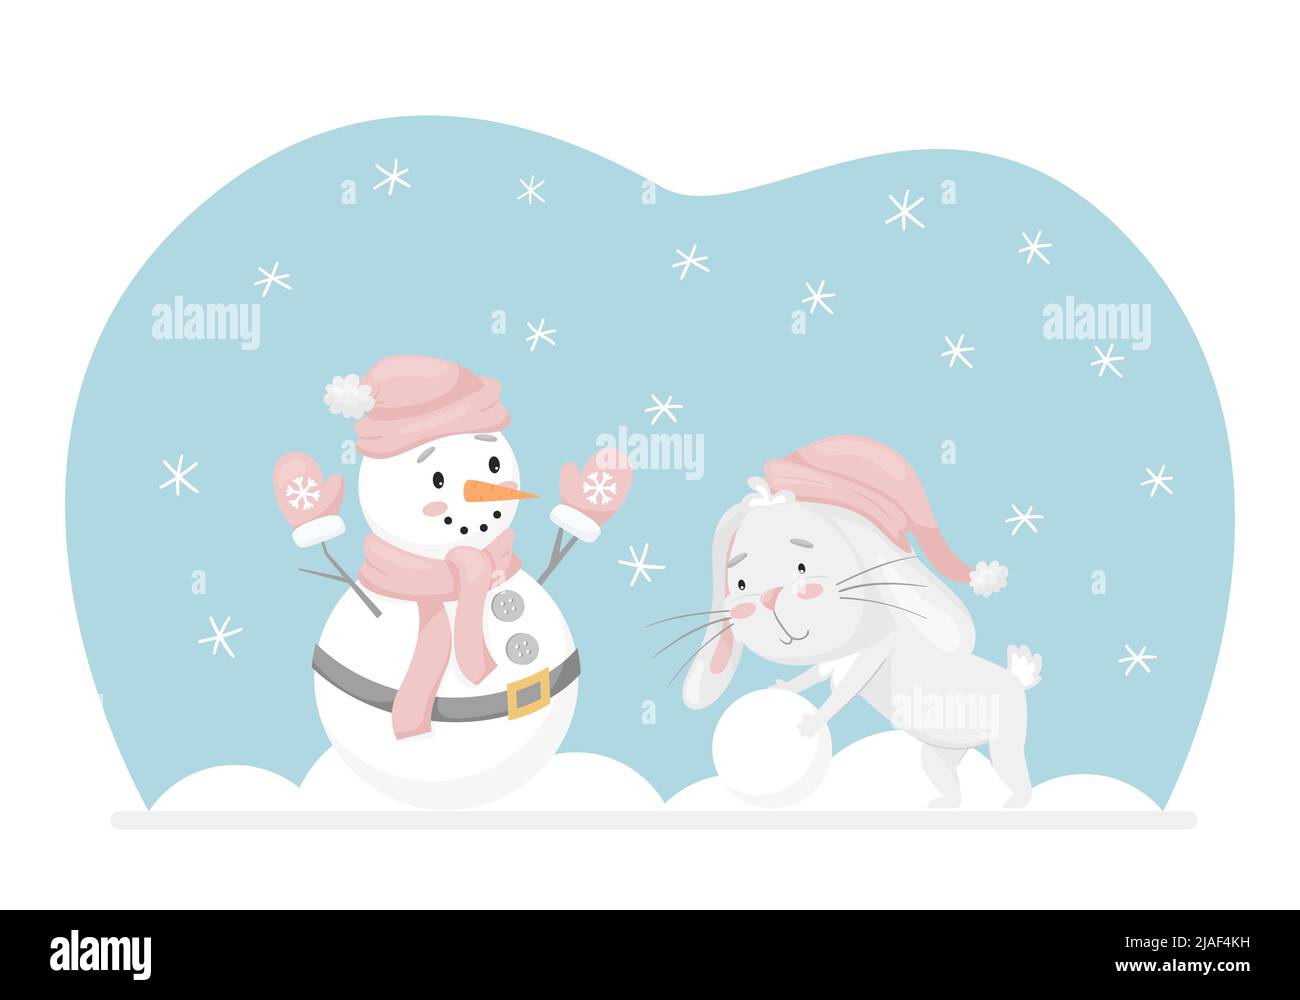 Coniglio rotola una palla di neve, fa un pupazzo di neve. Attività di divertimento invernale. Carattere adorabile in colori pastello. Kids design per carte, vestiti, web design. Childr Illustrazione Vettoriale